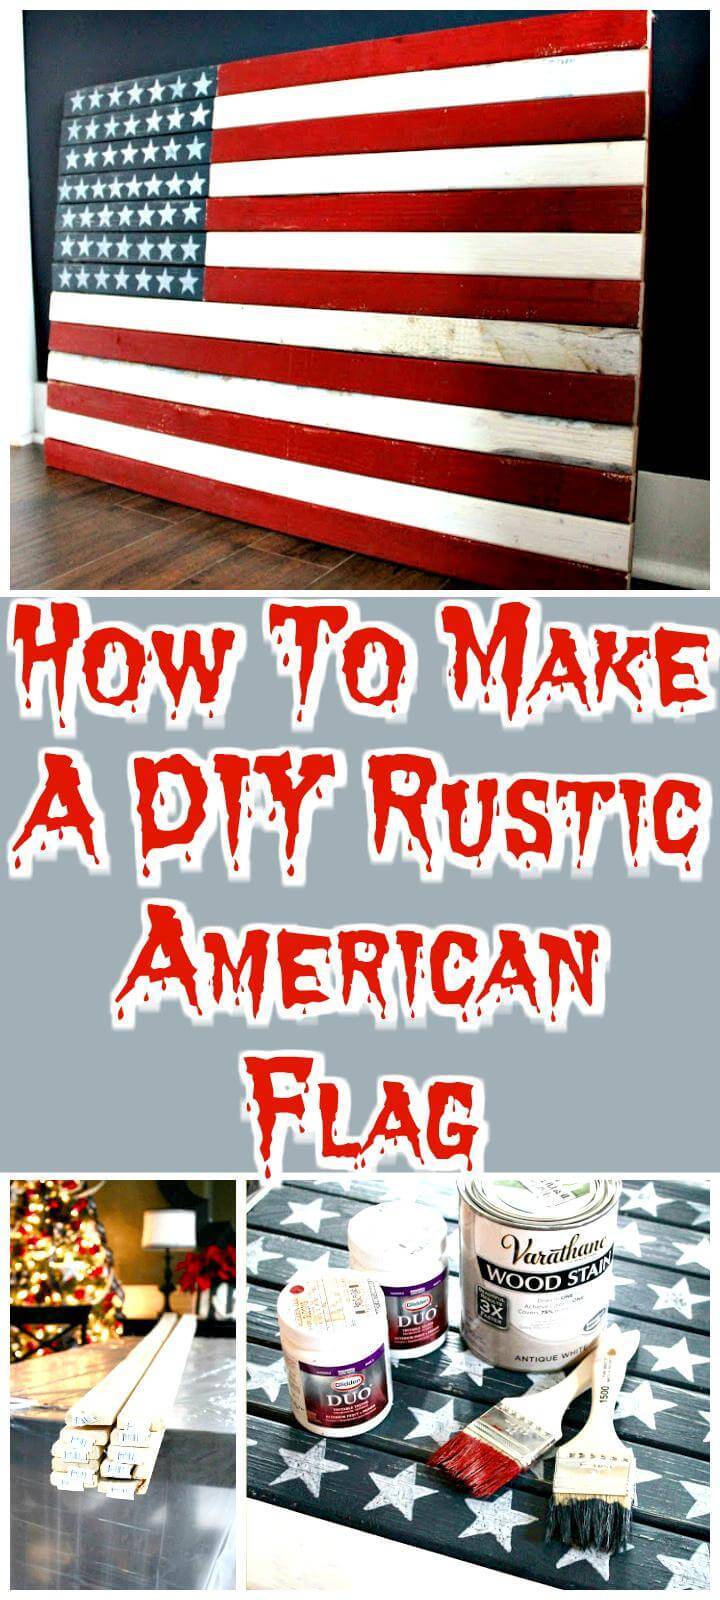 DIY rustic American flag tutorial